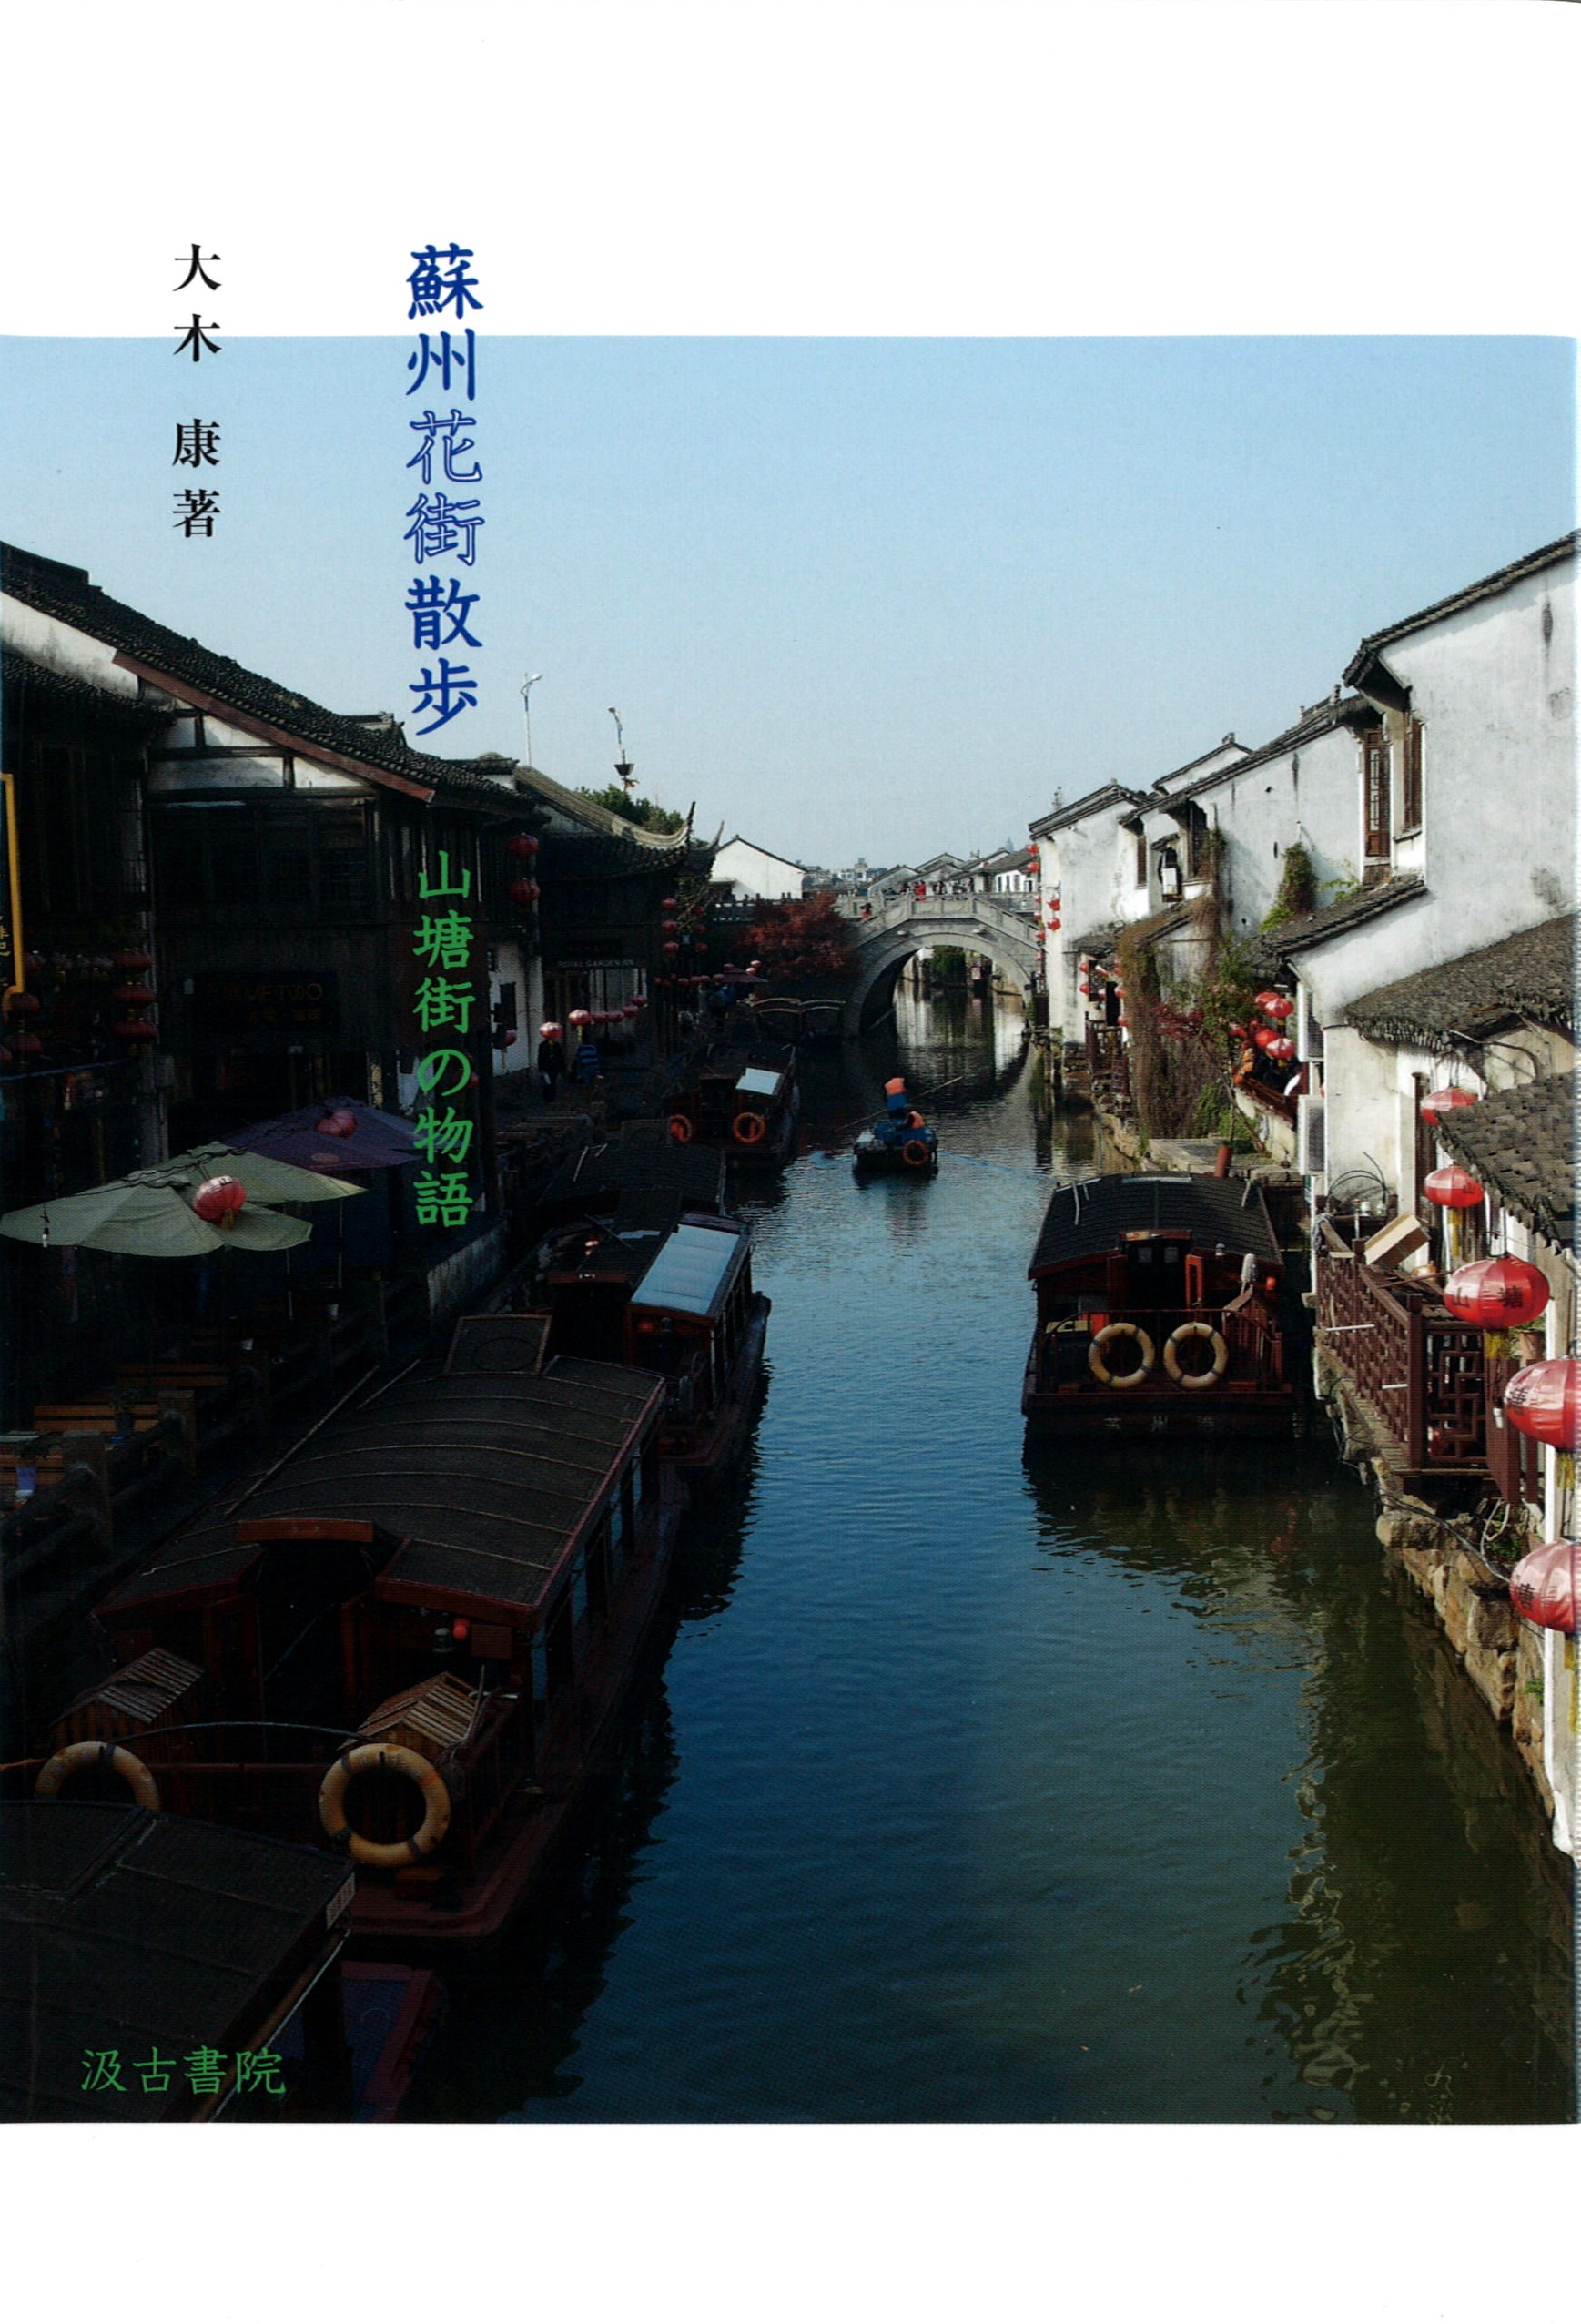 南京秦淮河の街並みの写真